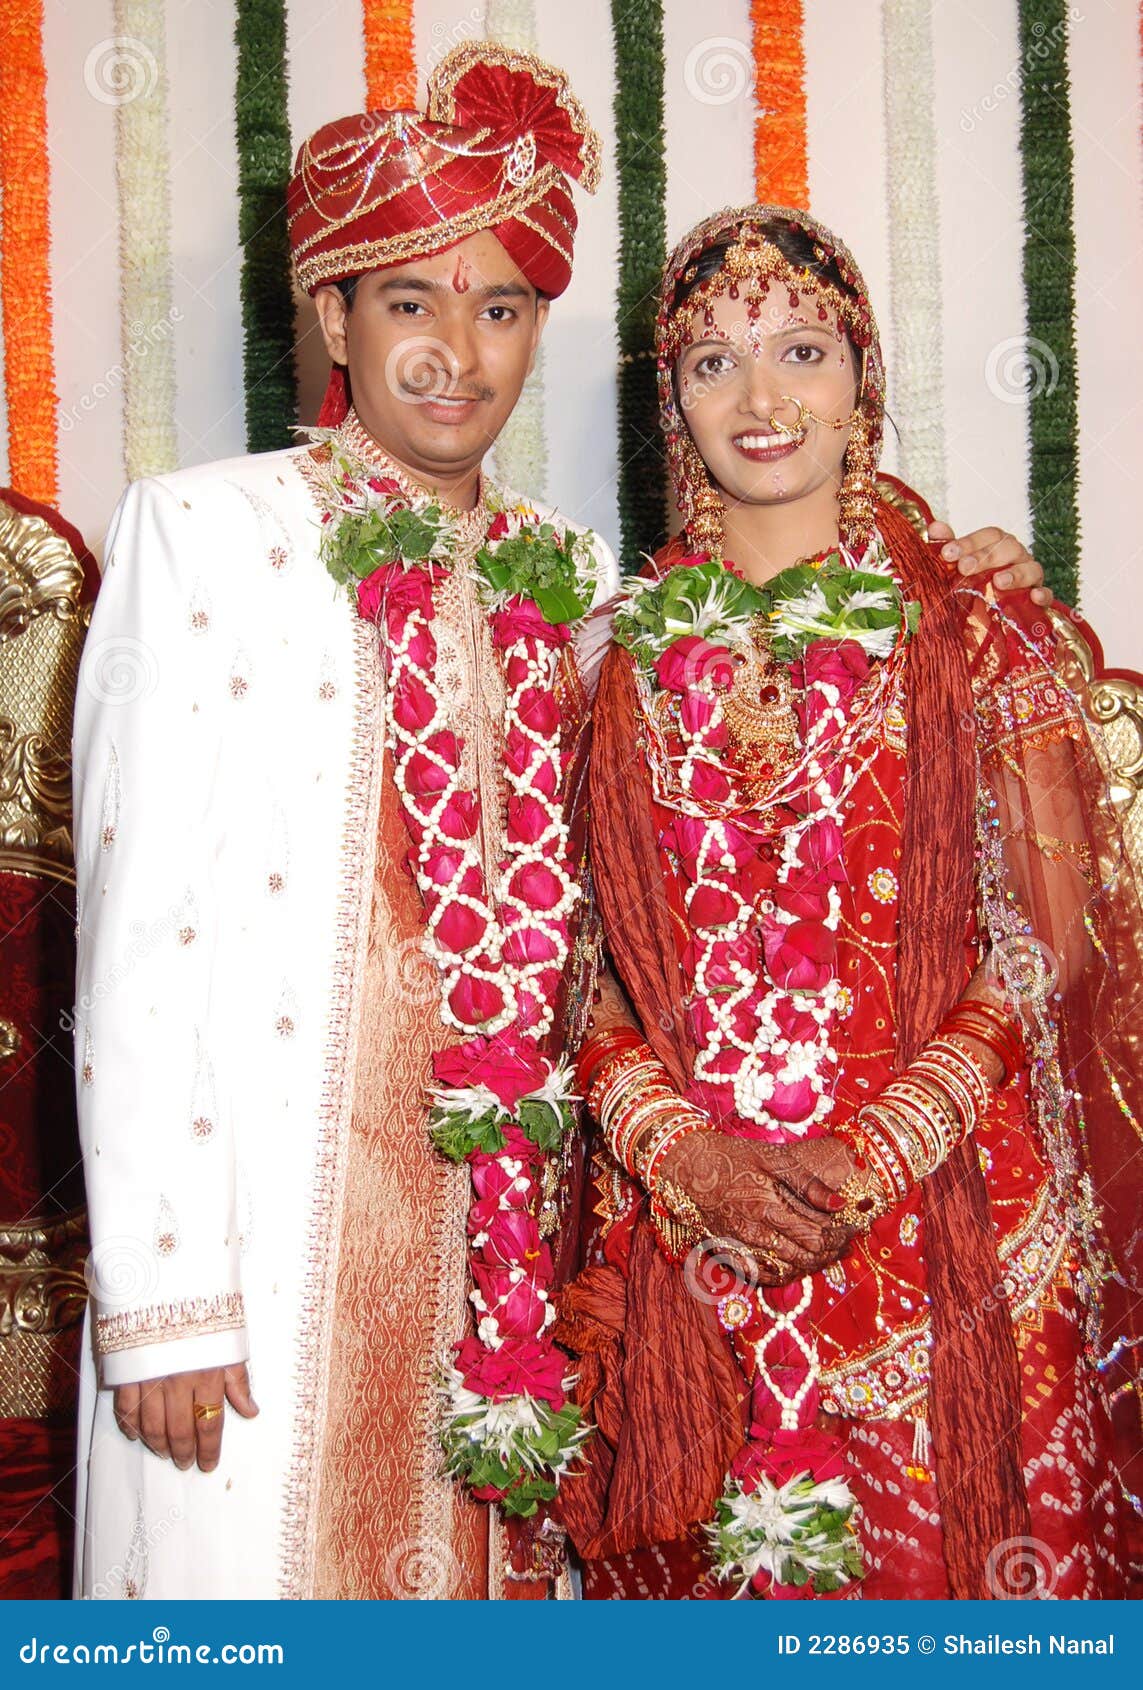 indian-bride-groom-2286935.jpg